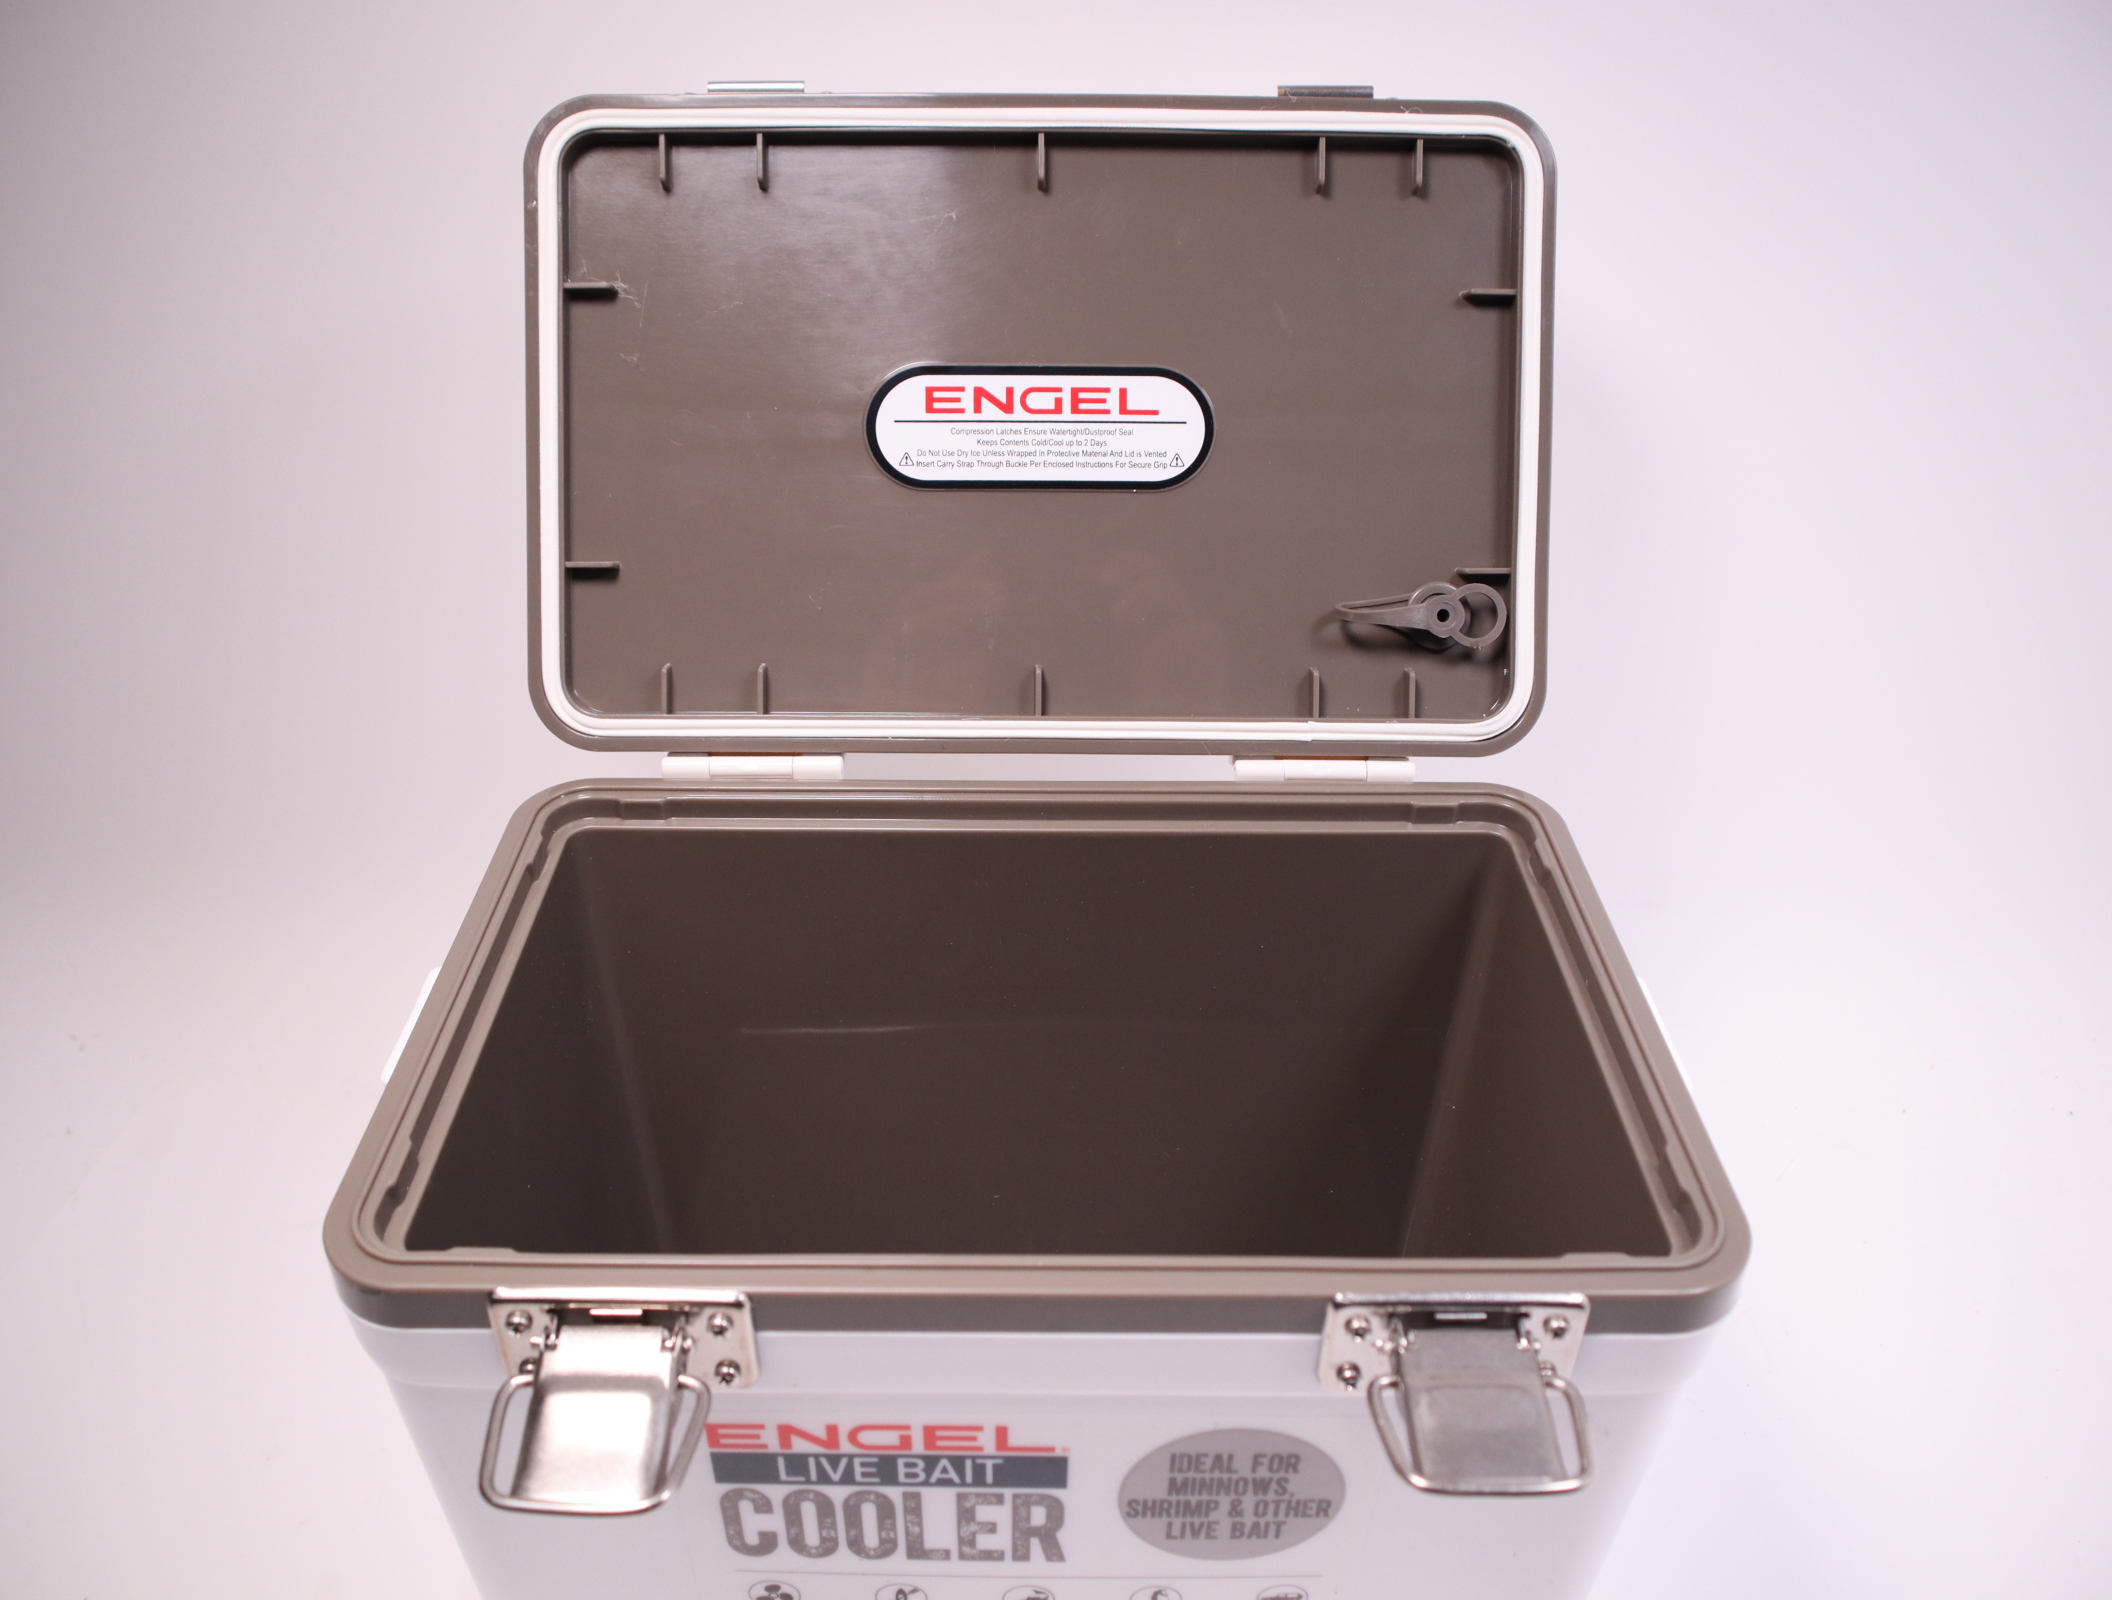 Engel ENGLBC7-N 7.5qt Live Bait Cooler Kit Box White